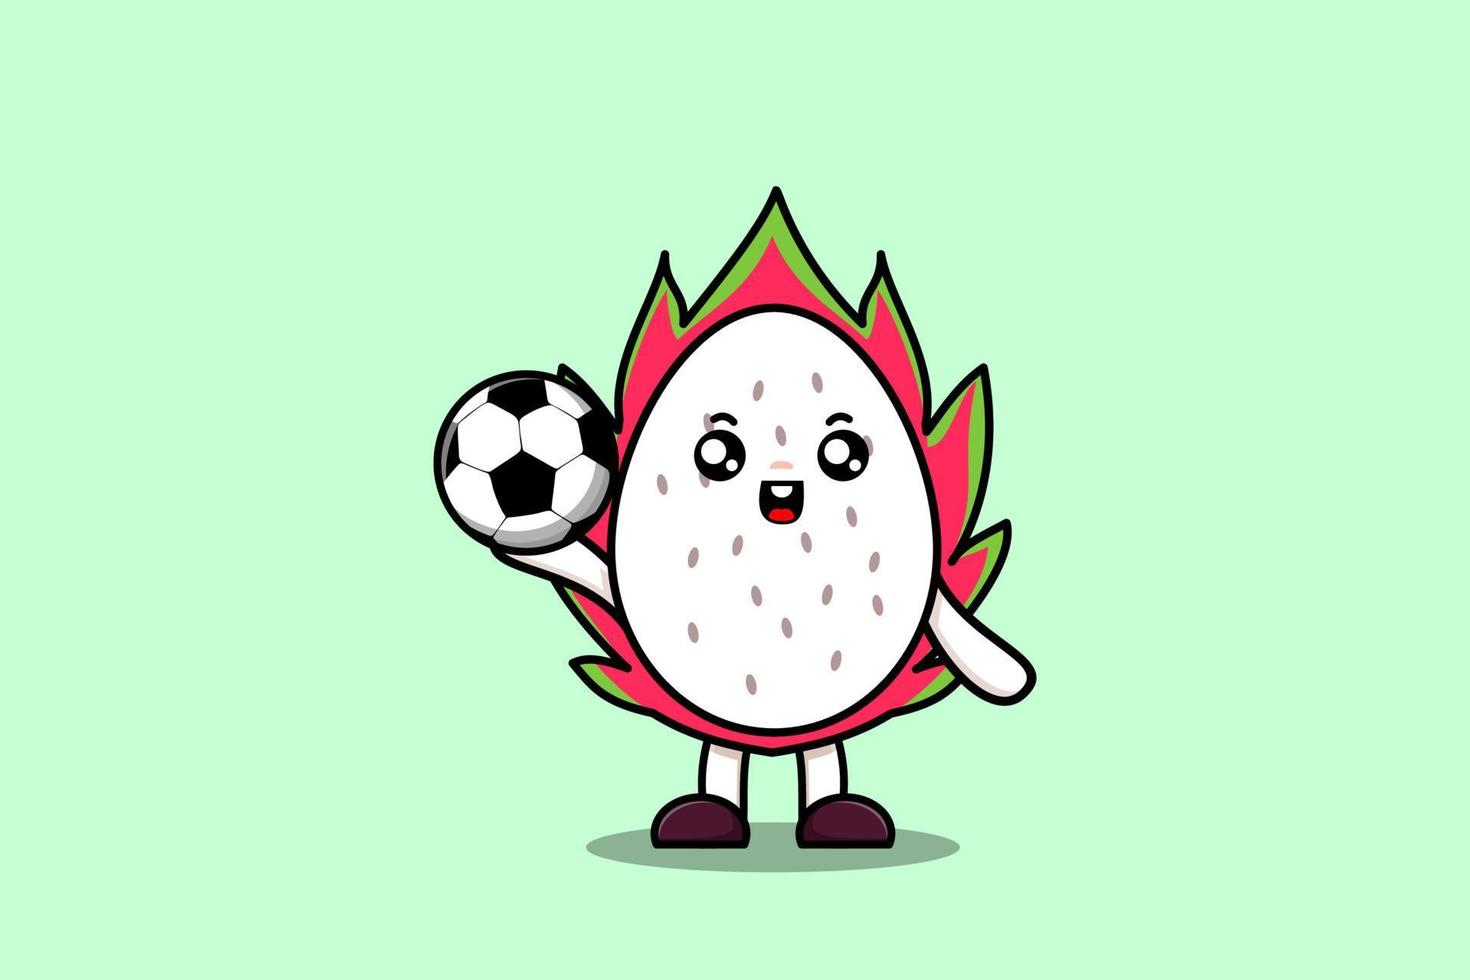 personnage de dessin animé mignon fruit du dragon jouer au football vecteur